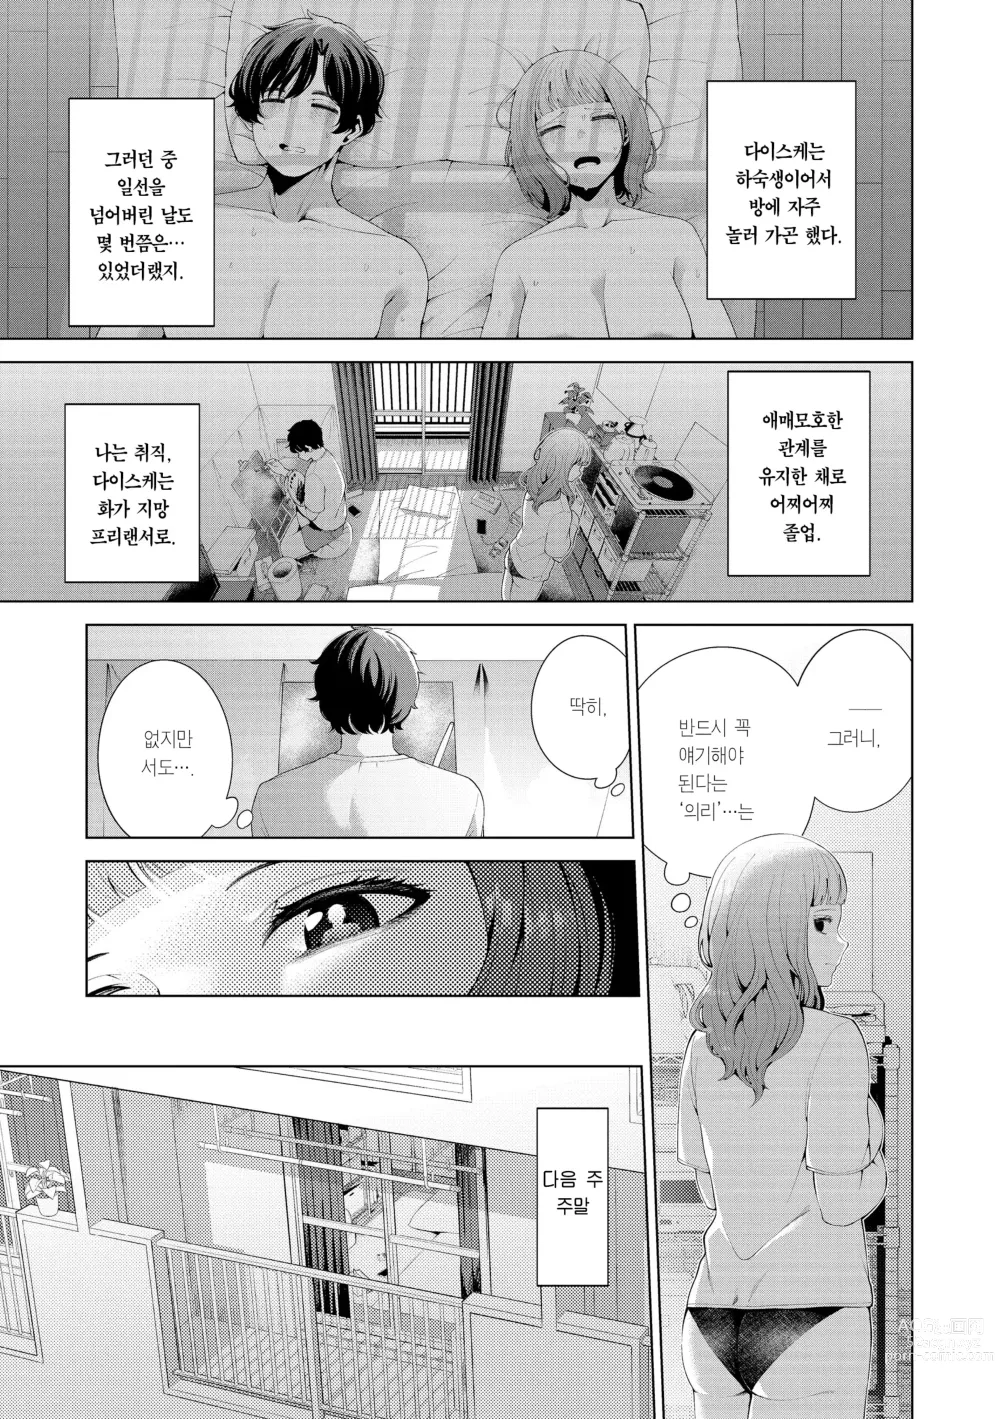 Page 9 of manga 나로 물들이고 싶어